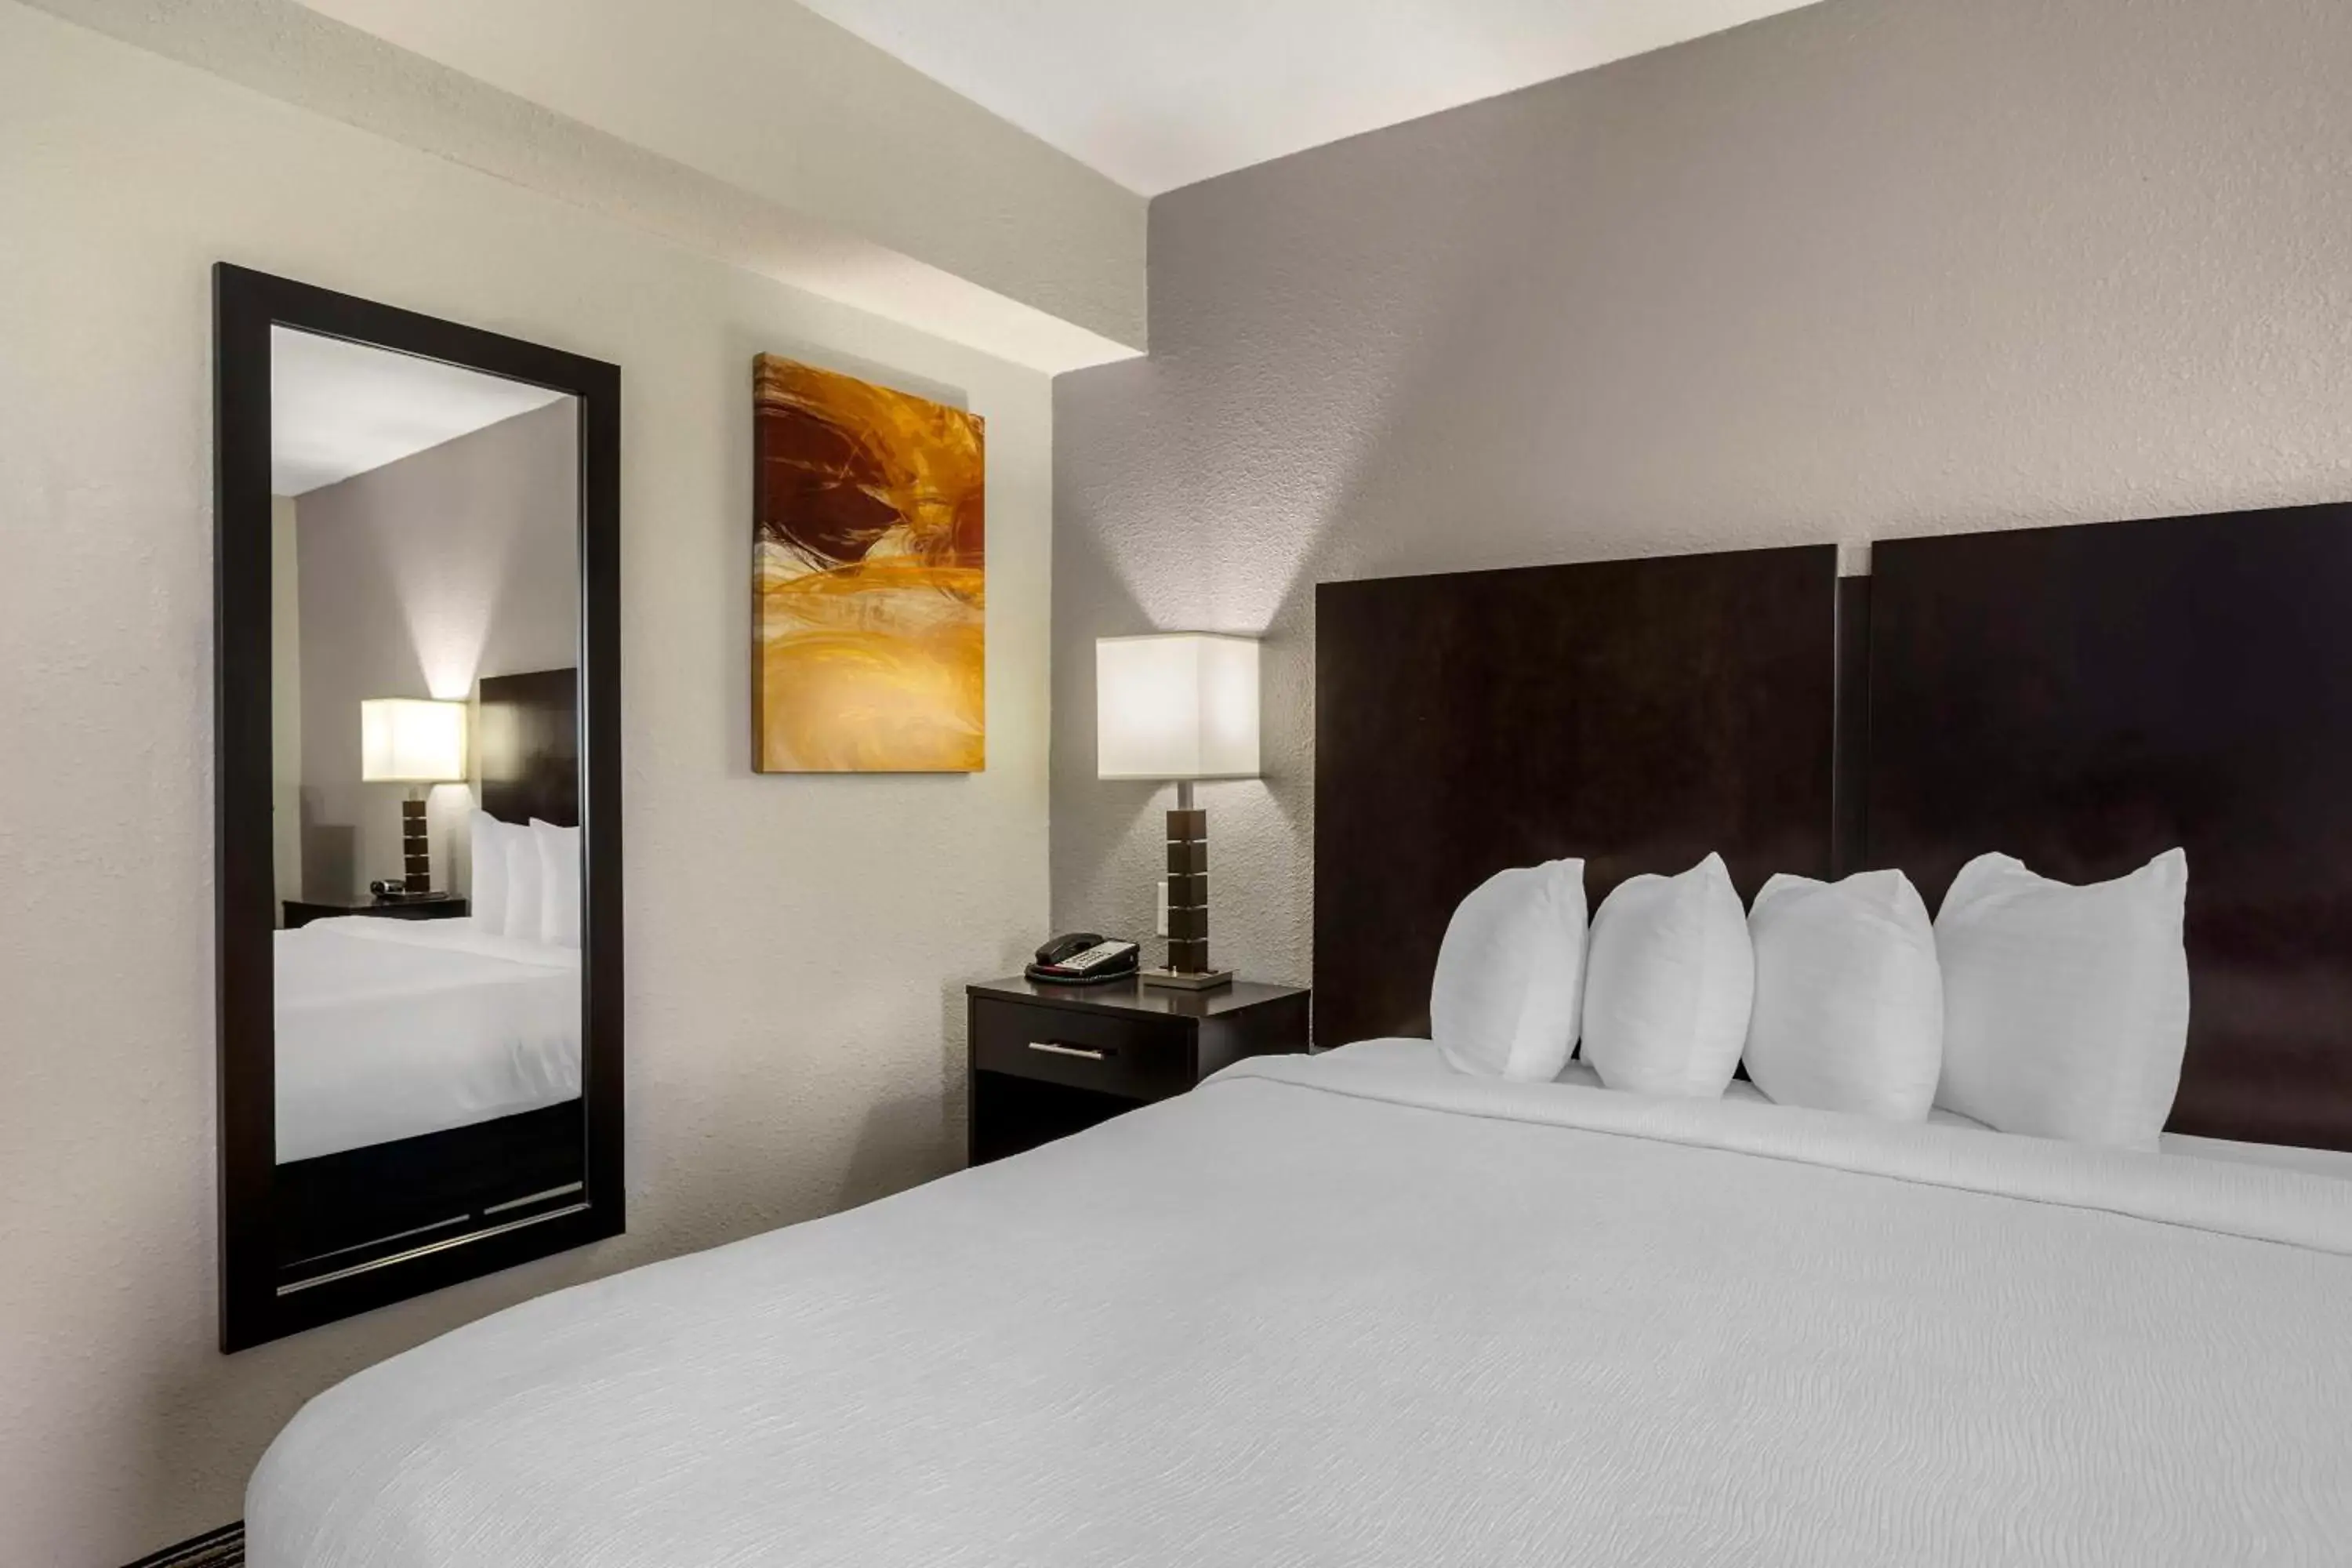 Bedroom, Bed in Best Western Plus Jonesboro Inn & Suites